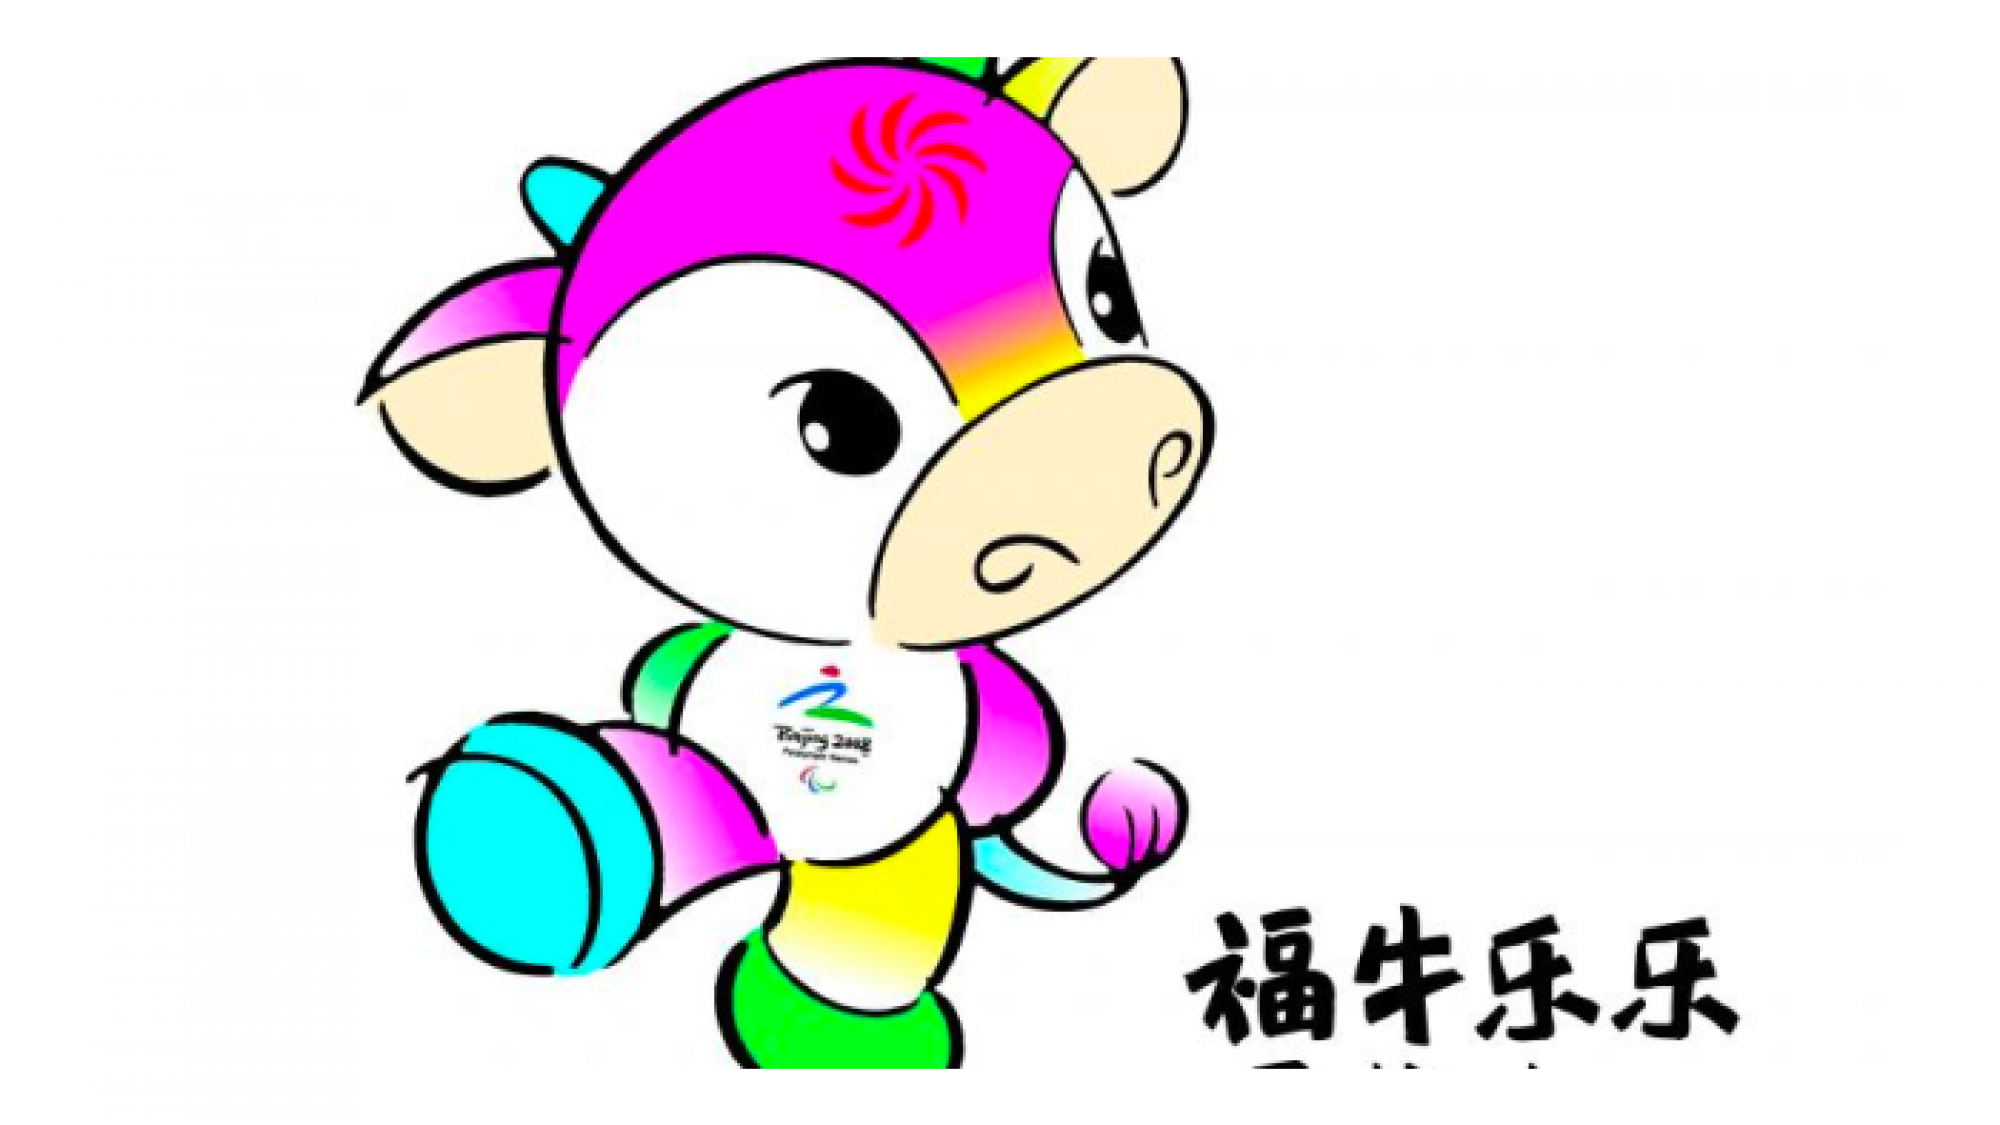 Beijing Mascot 2008